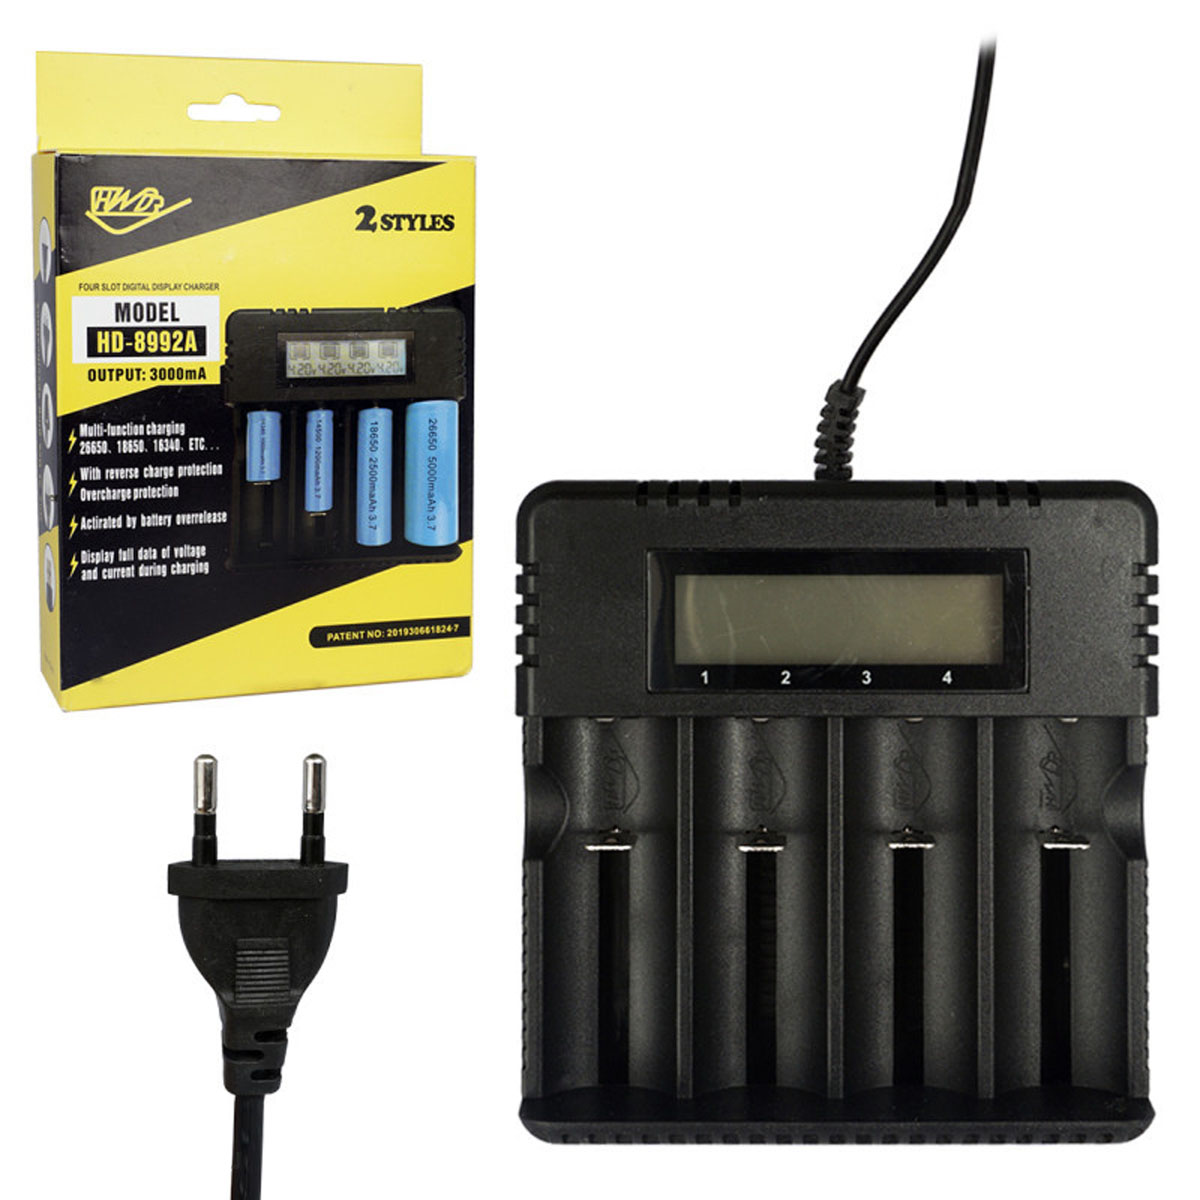 СЗУ (Сетевое зарядное устройство) HD-8992A для аккумуляторов, цвет черный